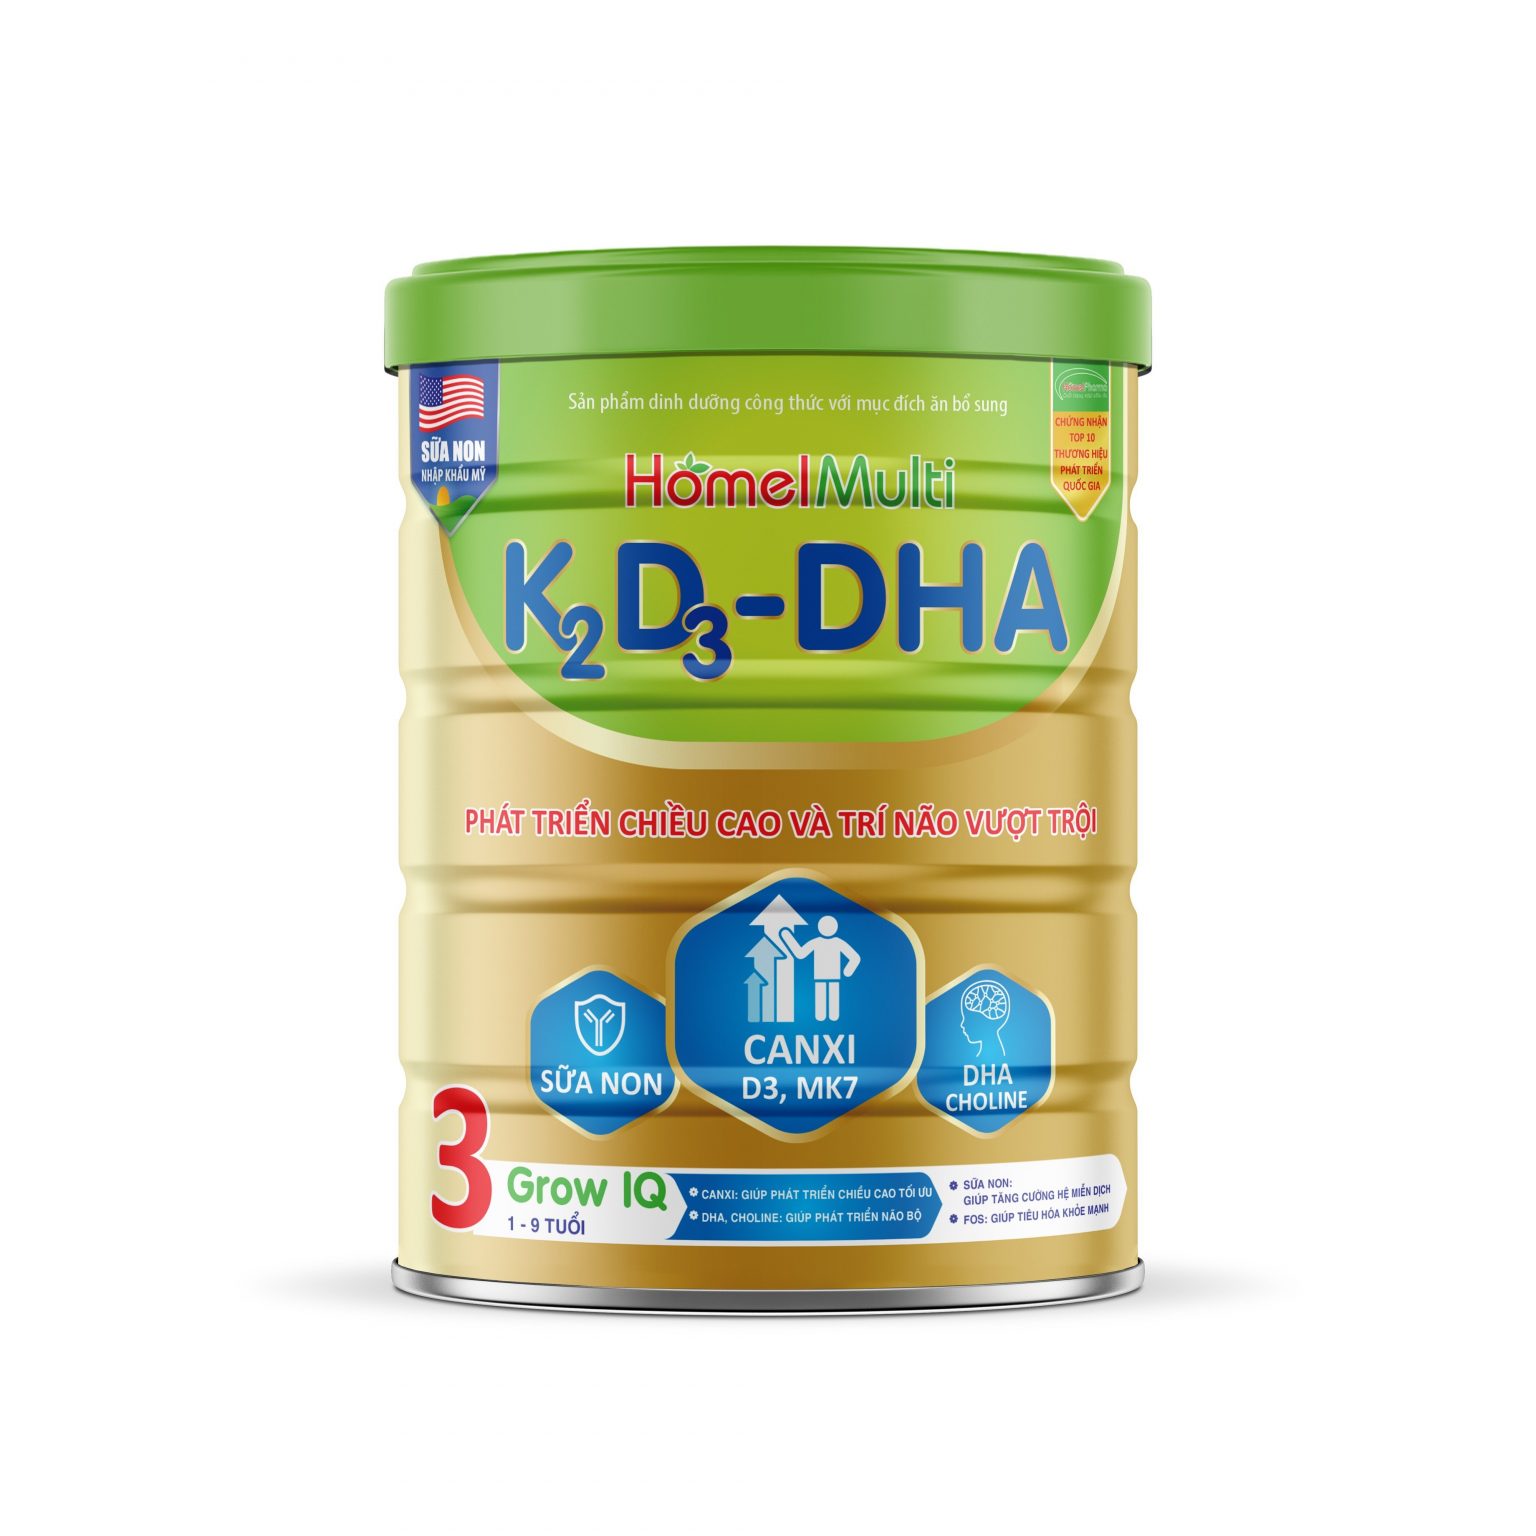 K2D3 - DHA Grow IQ - Phát Triển Chiều Cao Và Trí Não Vượt Trội